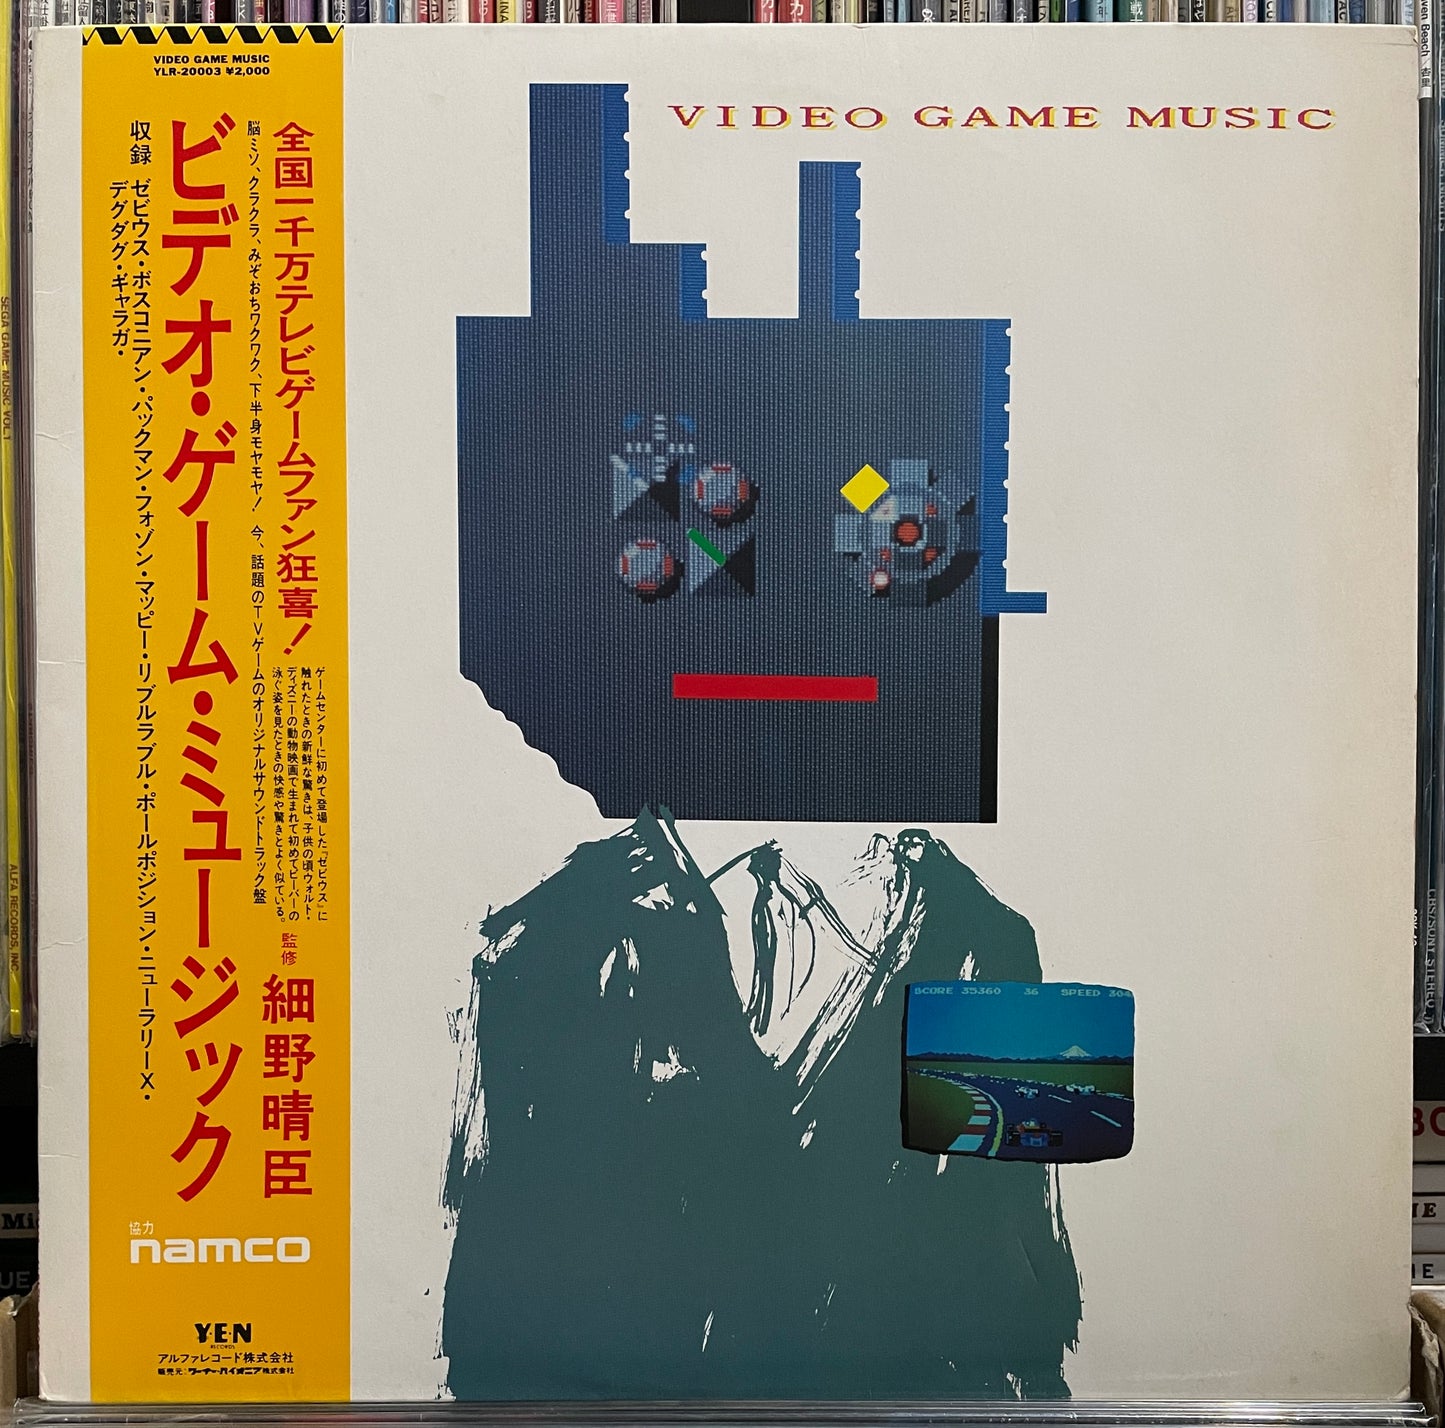 Haruomi Hosono "Video Game Music" (1984)